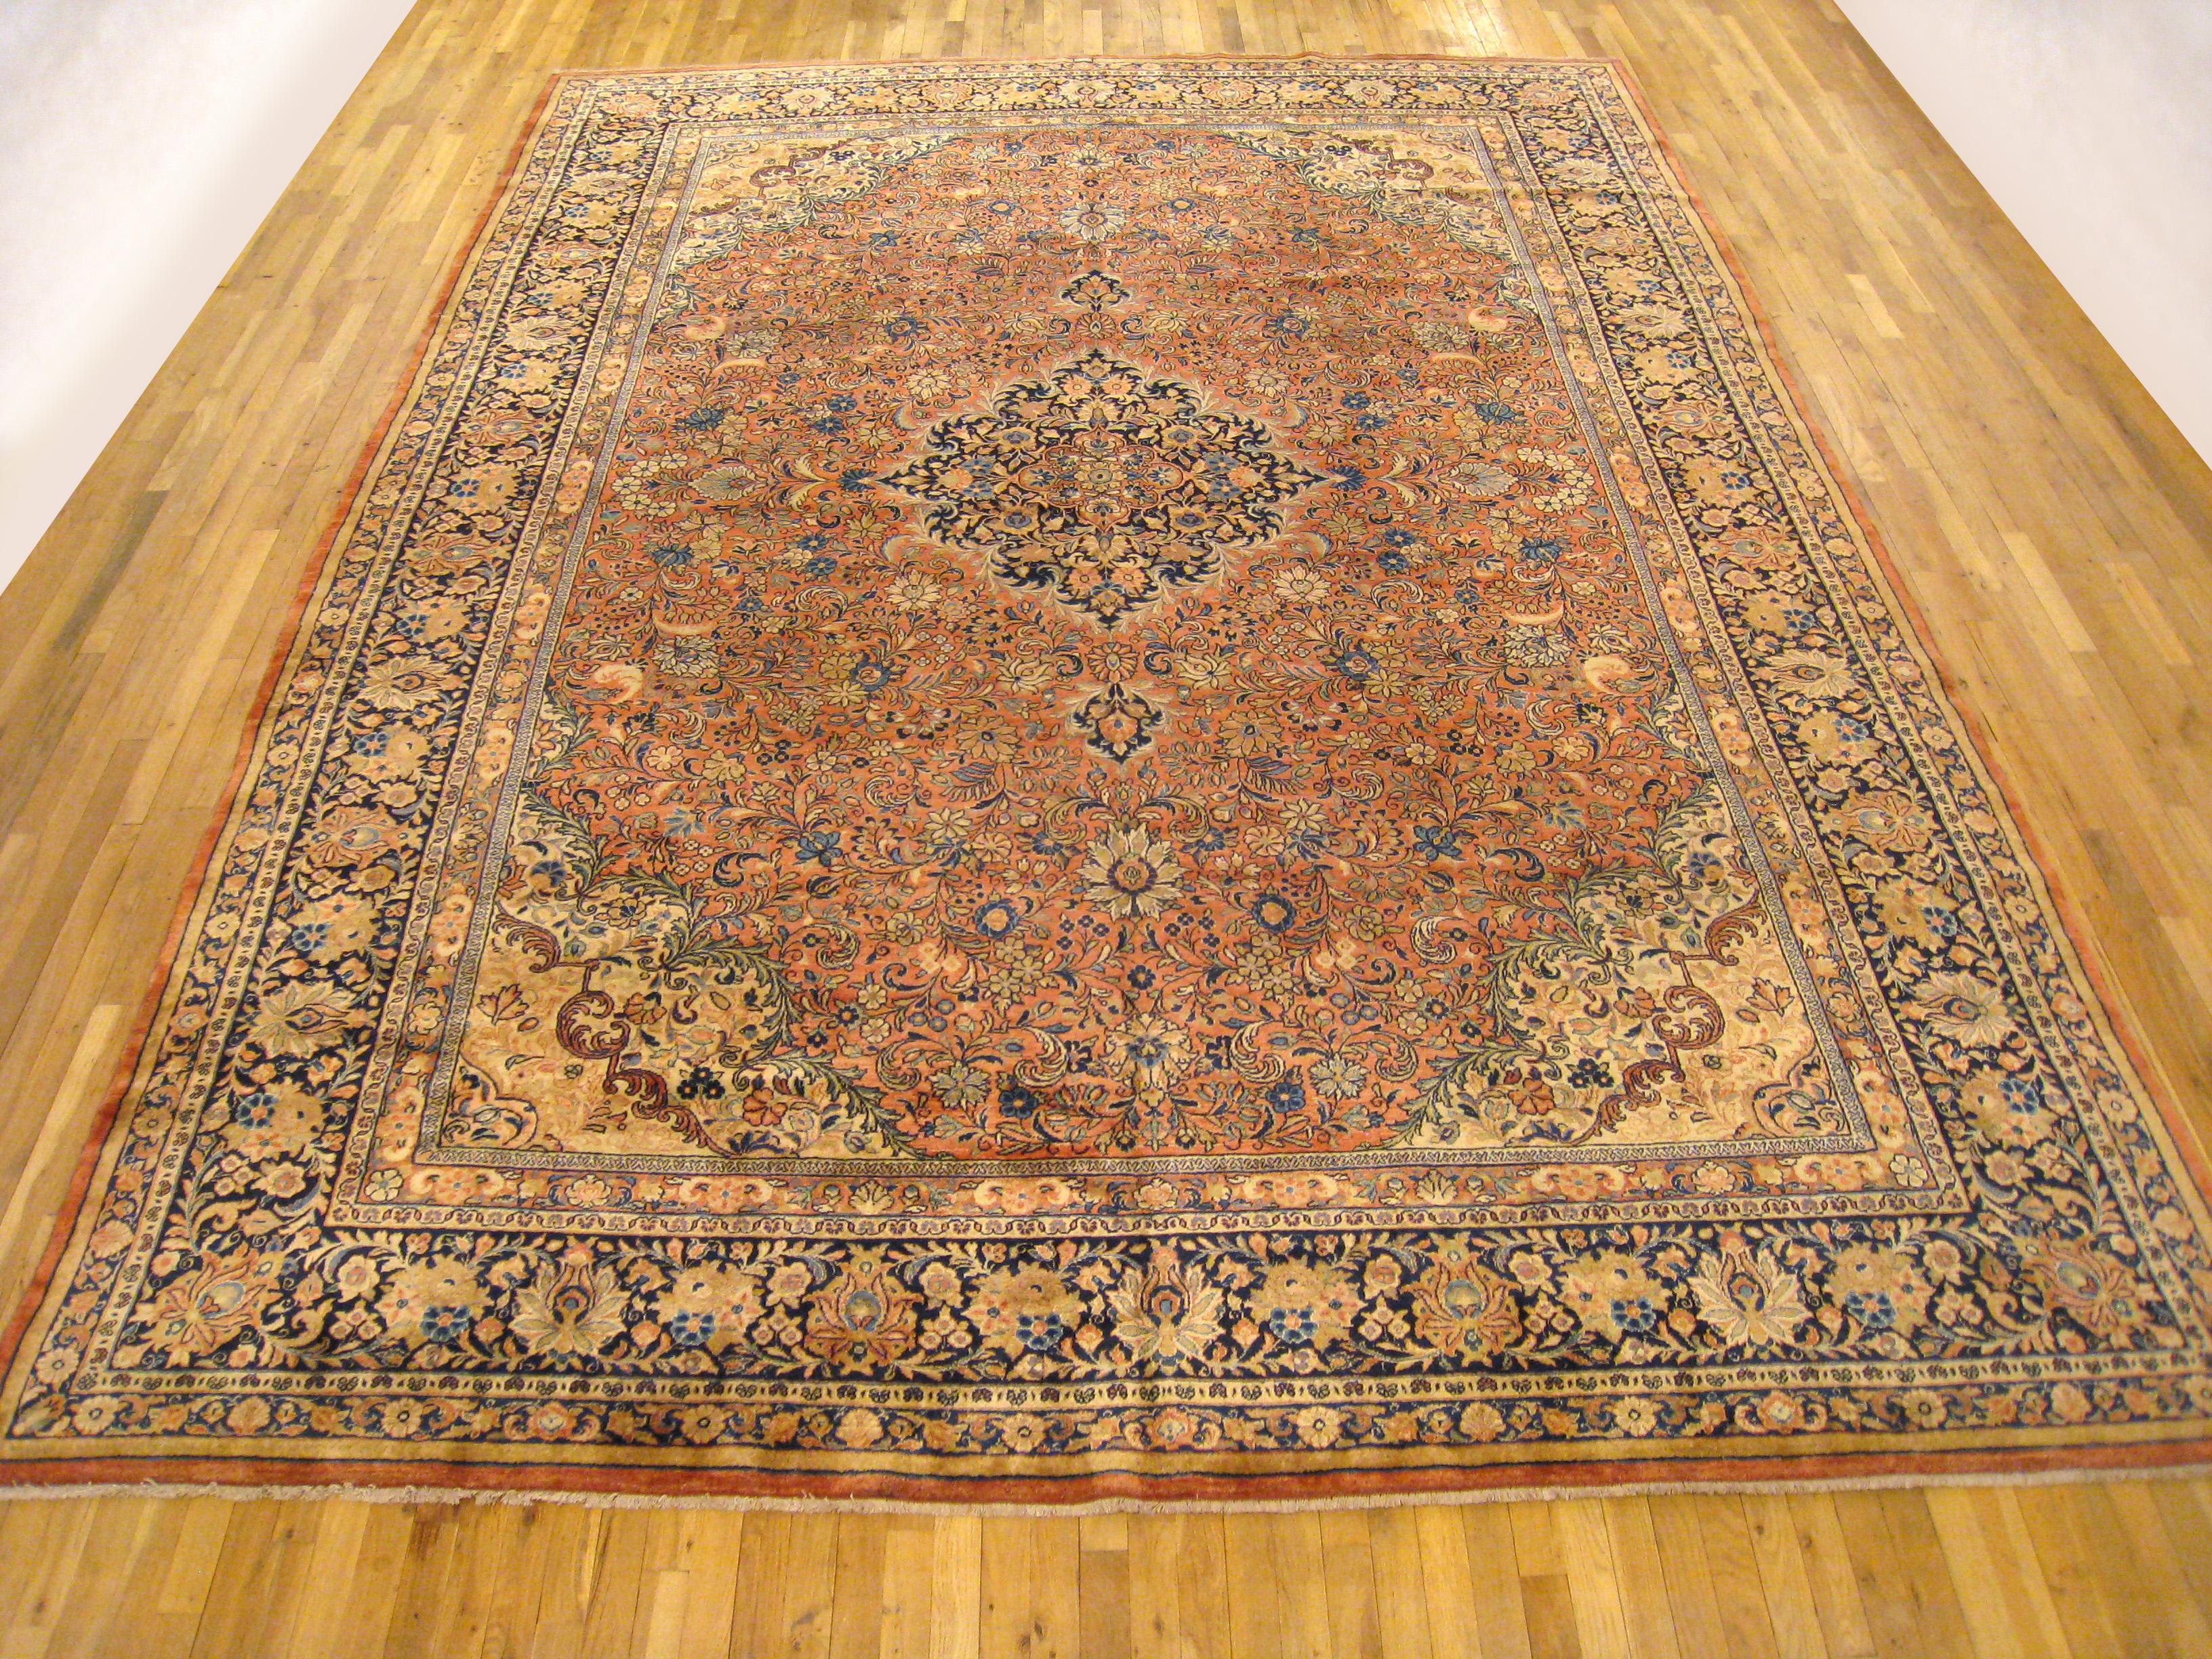 Antique Persian Sarouk oriental rug, circa 1920, room size.

An antique Persian Sarouk oriental rug, size 13'8